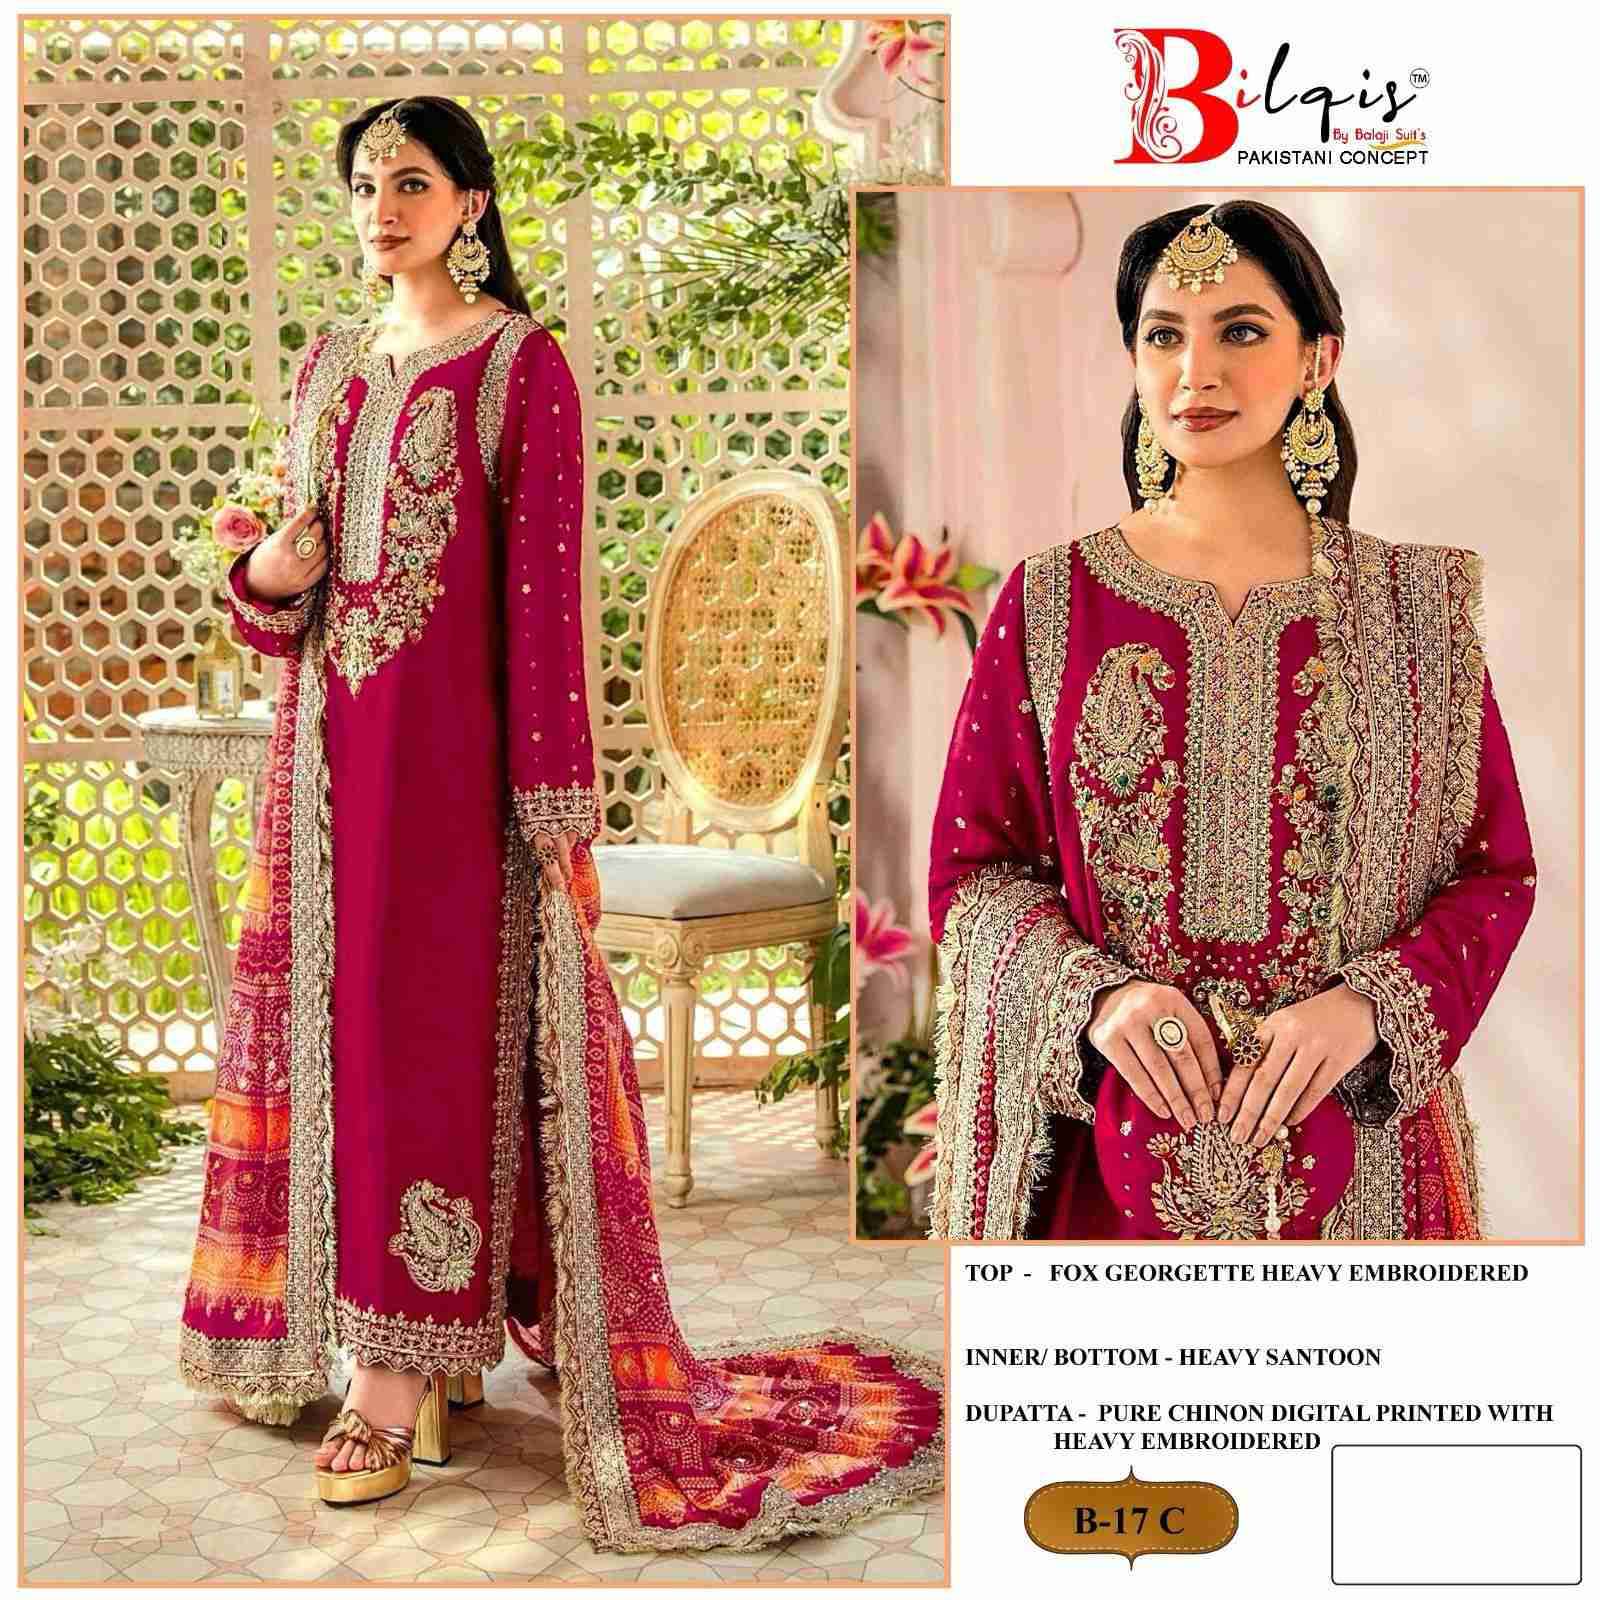 Bilqis B 17 Colors Latest New Designs Pakistani Suit Wholesalers